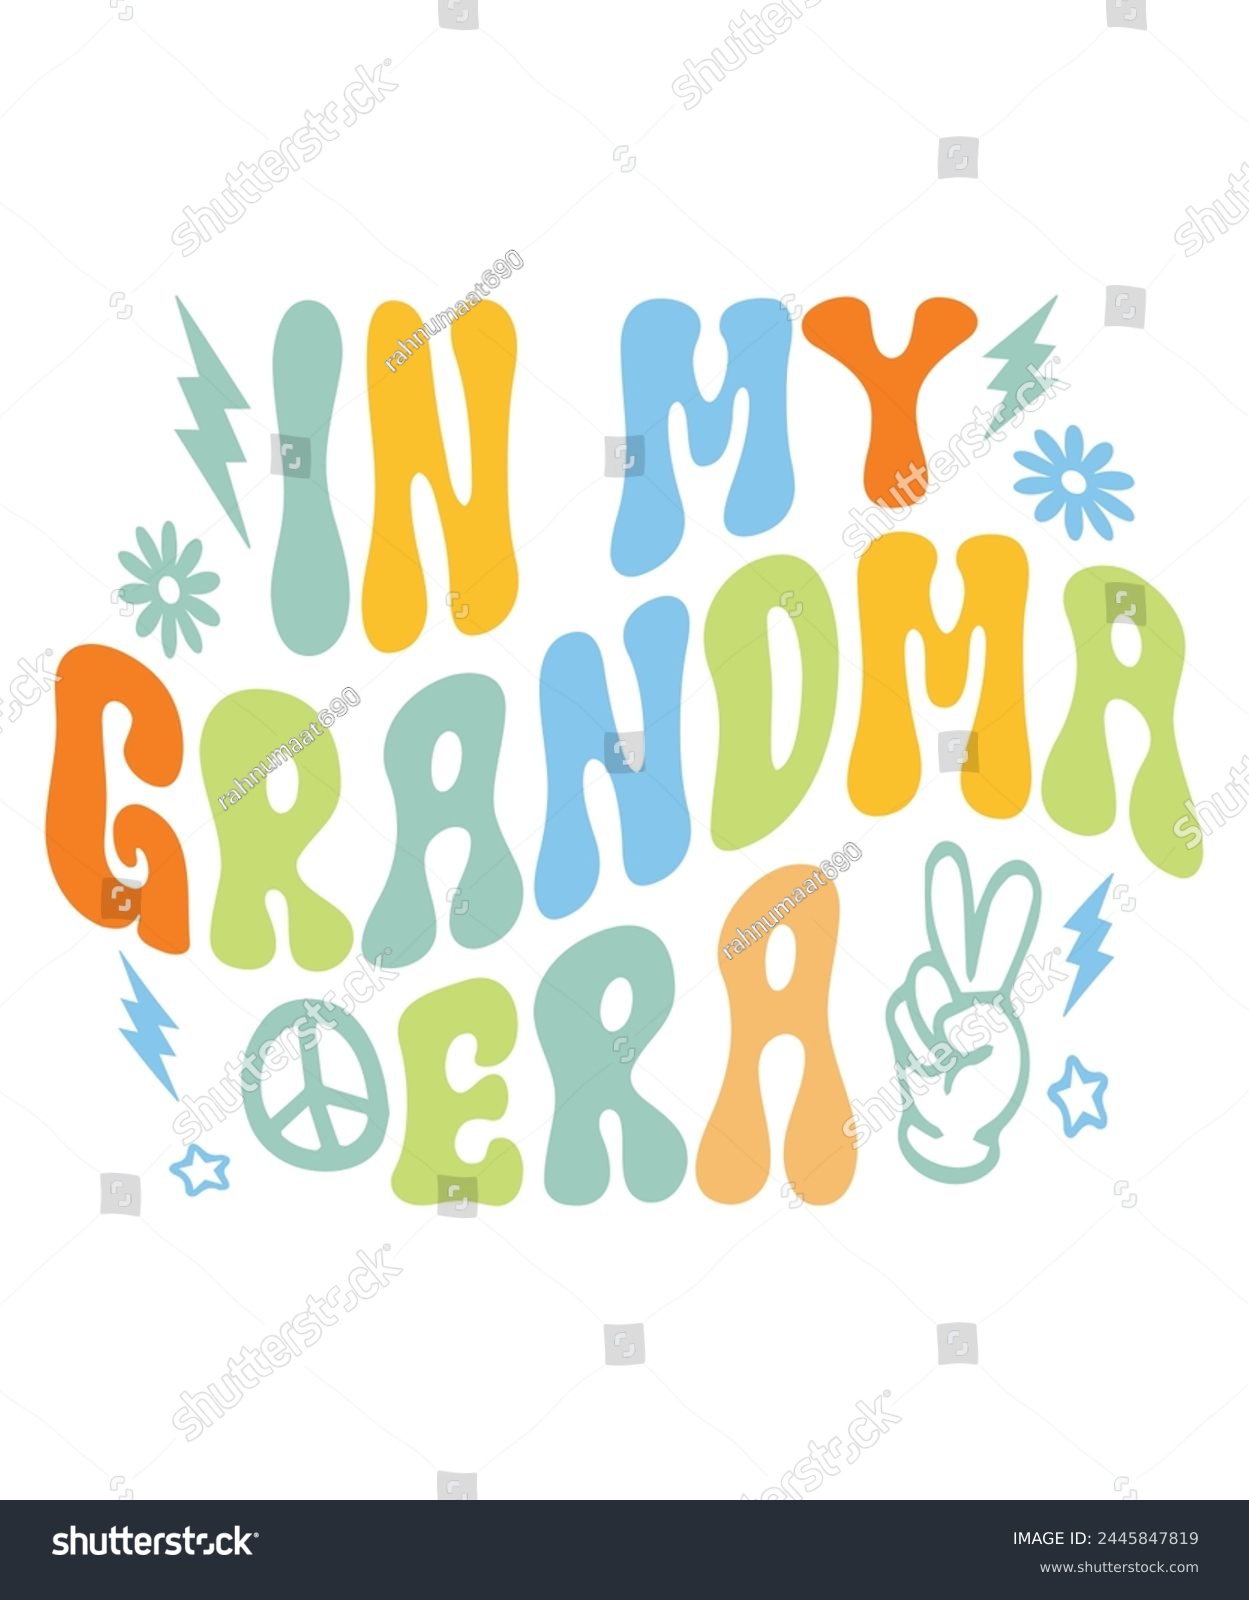 SVG of In grandma era groovy Hippie boho, Retro Groovy Mama, Retro Groovy Family, Mama Groovy, Hippie Boho Wavy,  svg